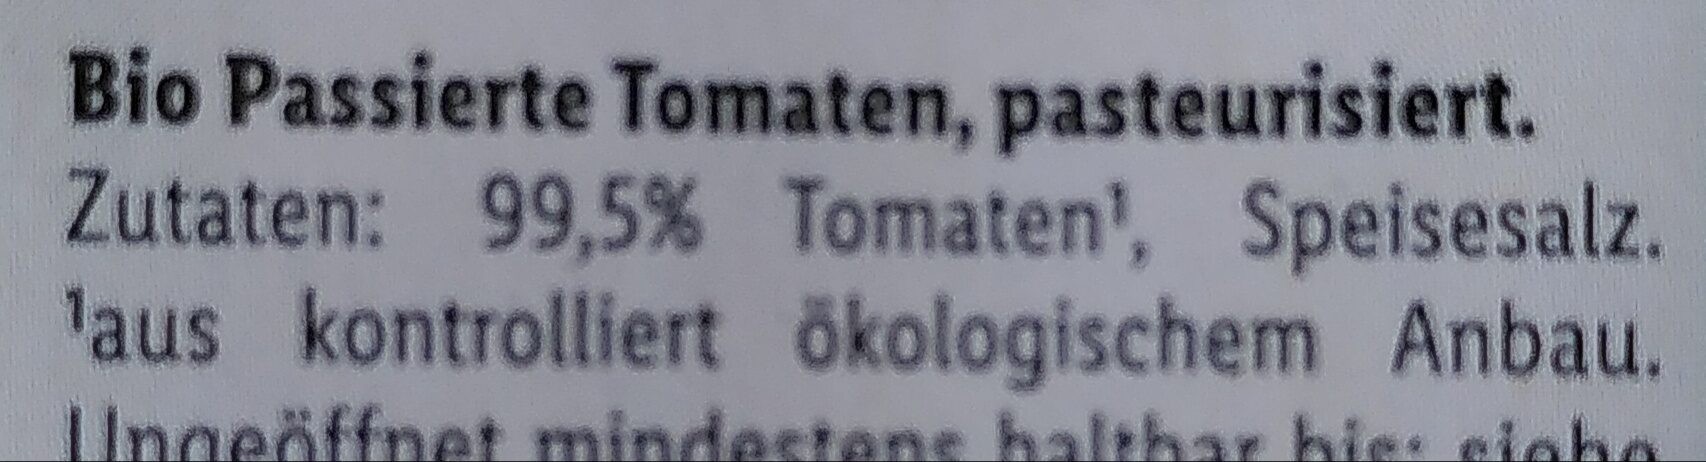 Organic tomato passata - Zutaten